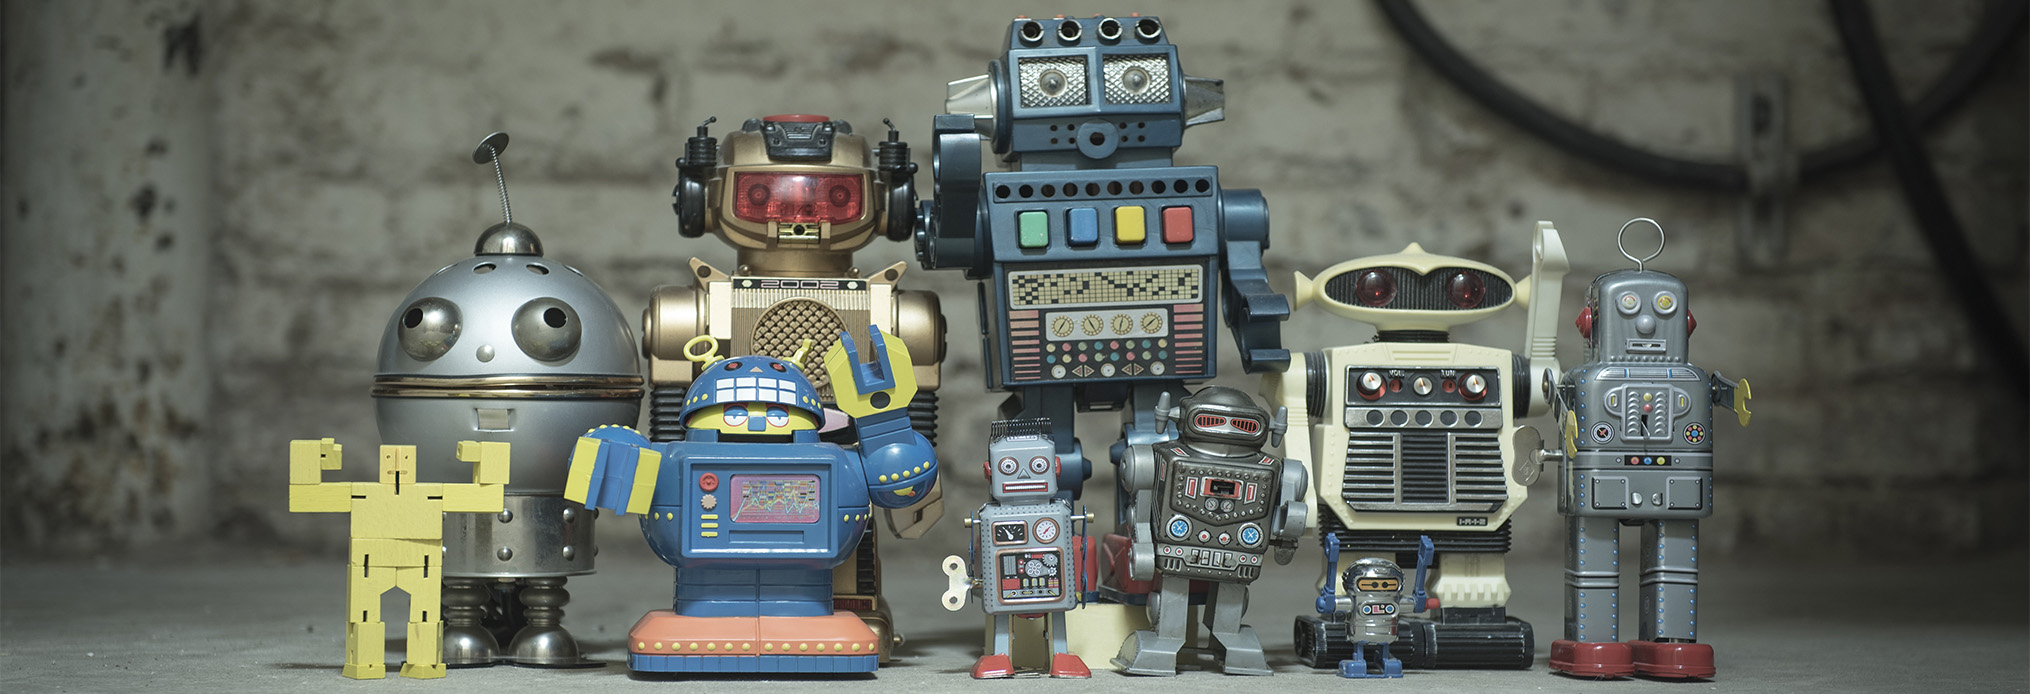 robótica, los materiales y su impacto futuro para humanidad | OpenMind